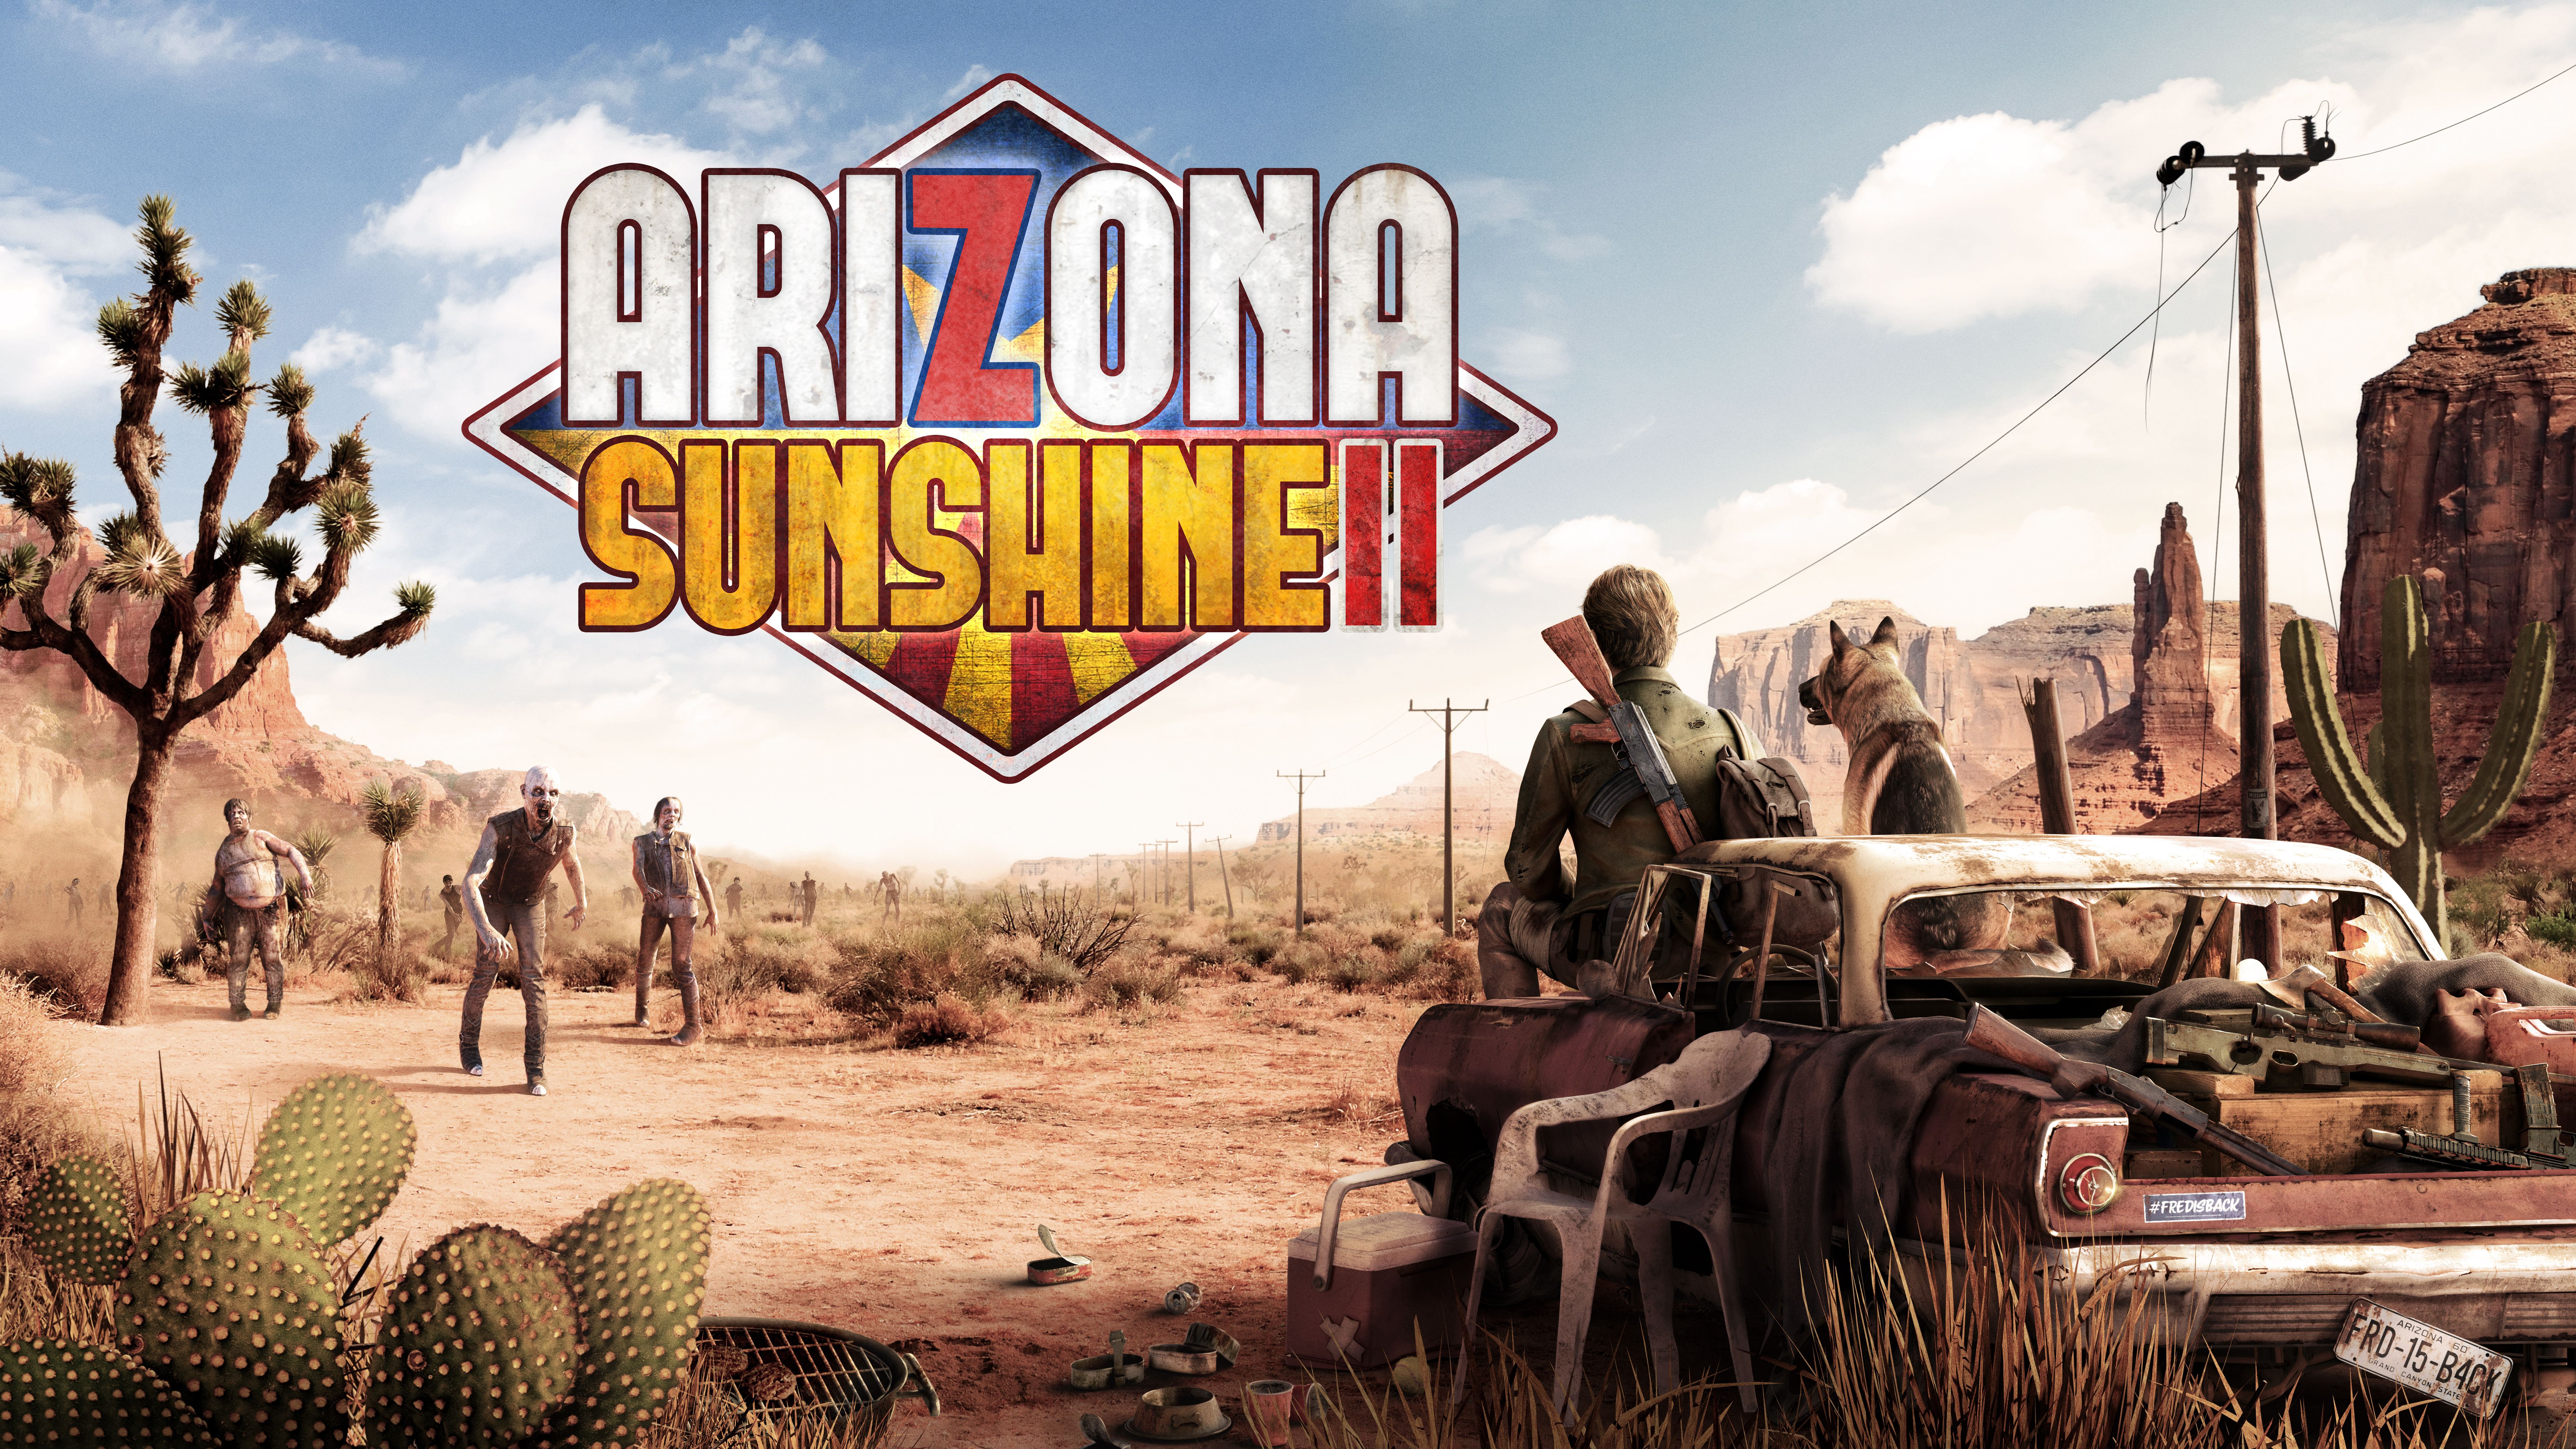 Arizona sunshine 2 in arrivo sulle piattaforme PS VR2 e PC VR entro quest'anno